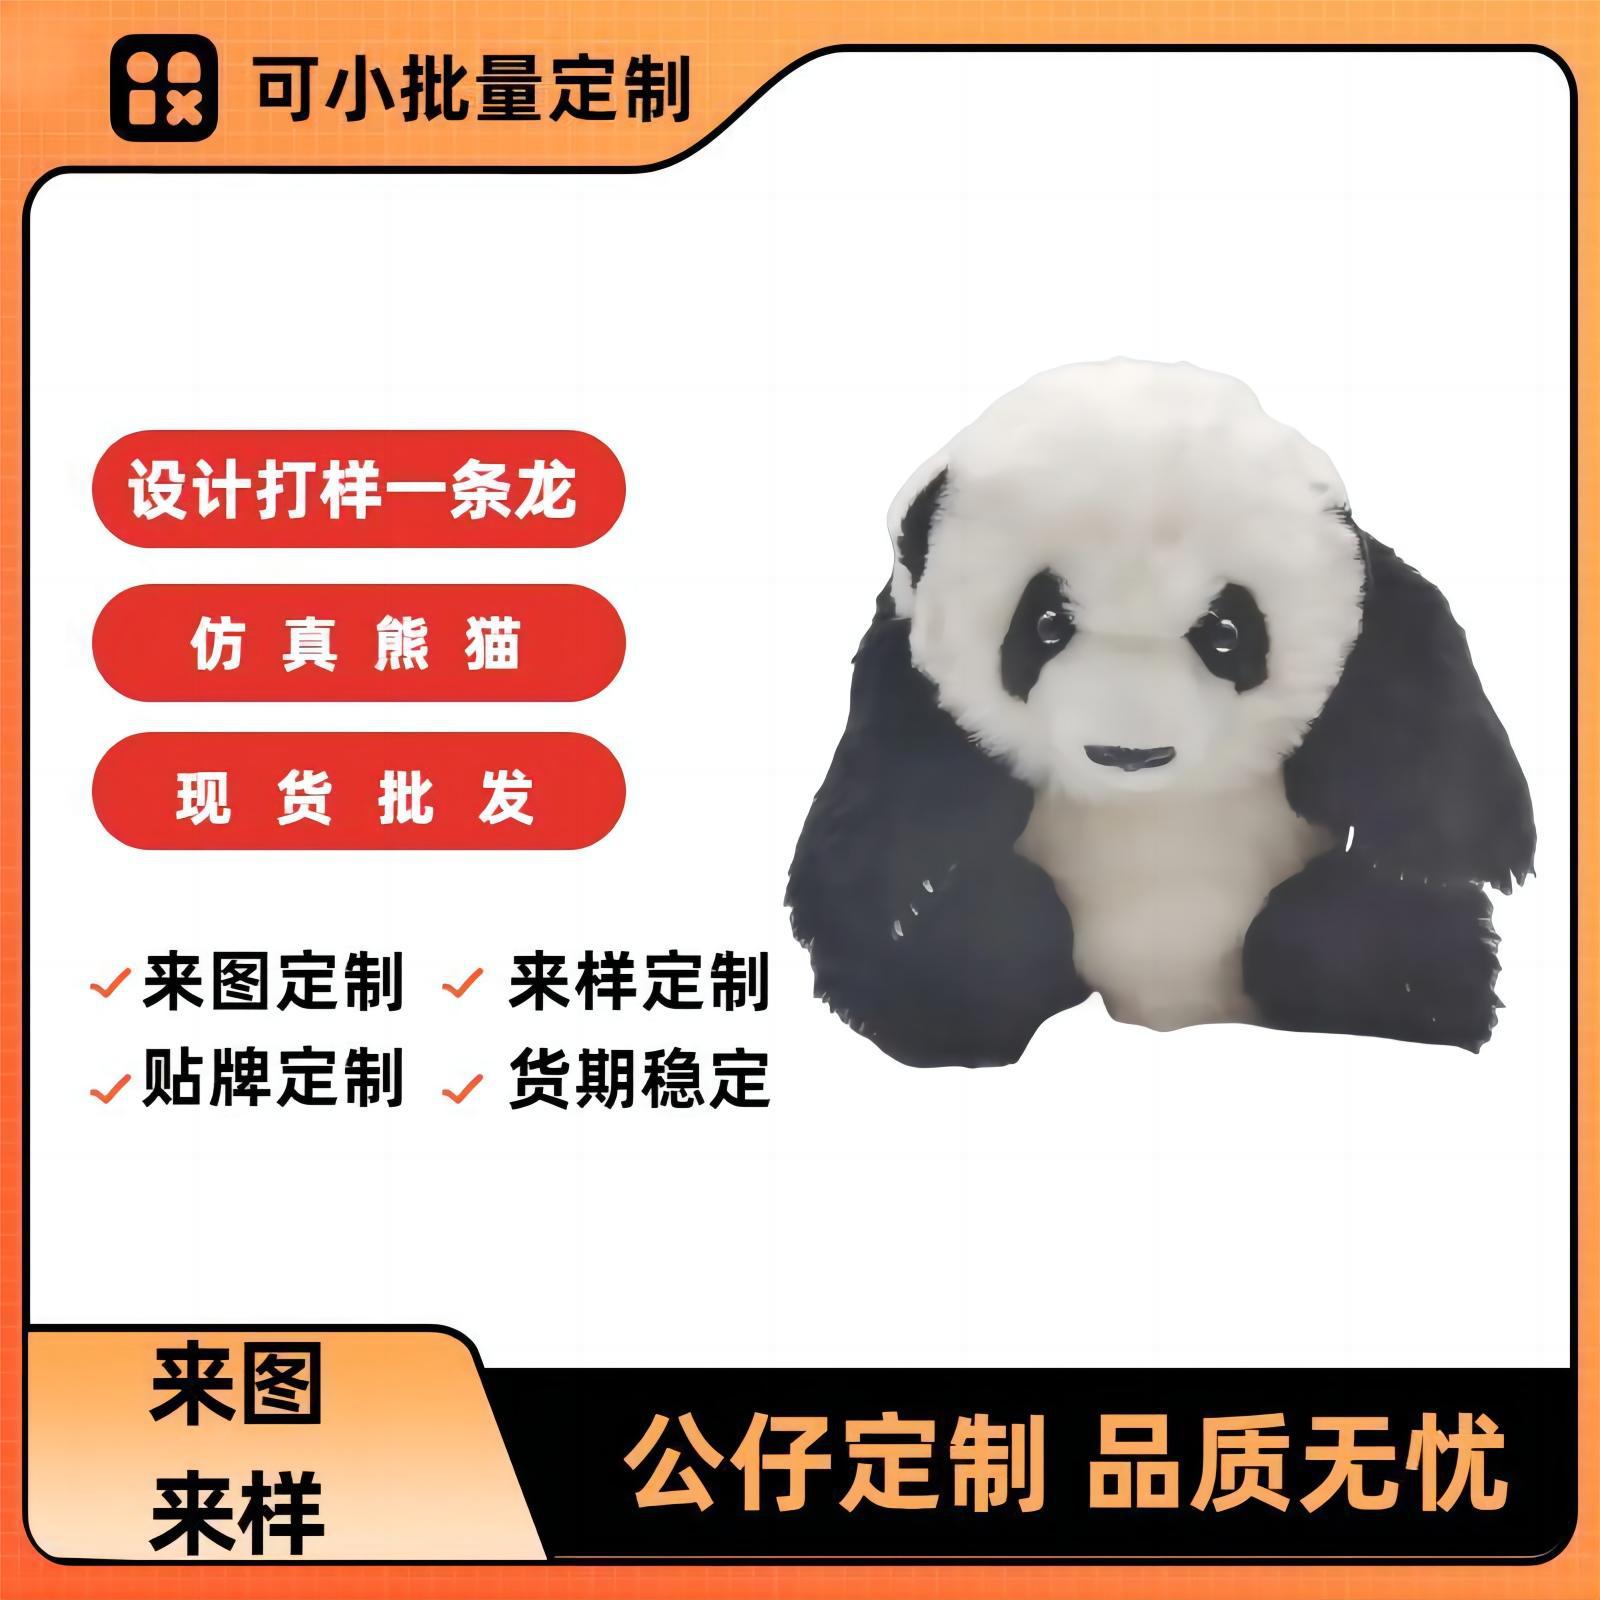 熊猫吉祥物小熊猫玩偶定 制仿真动物现货批发毛绒礼品熊猫玩具